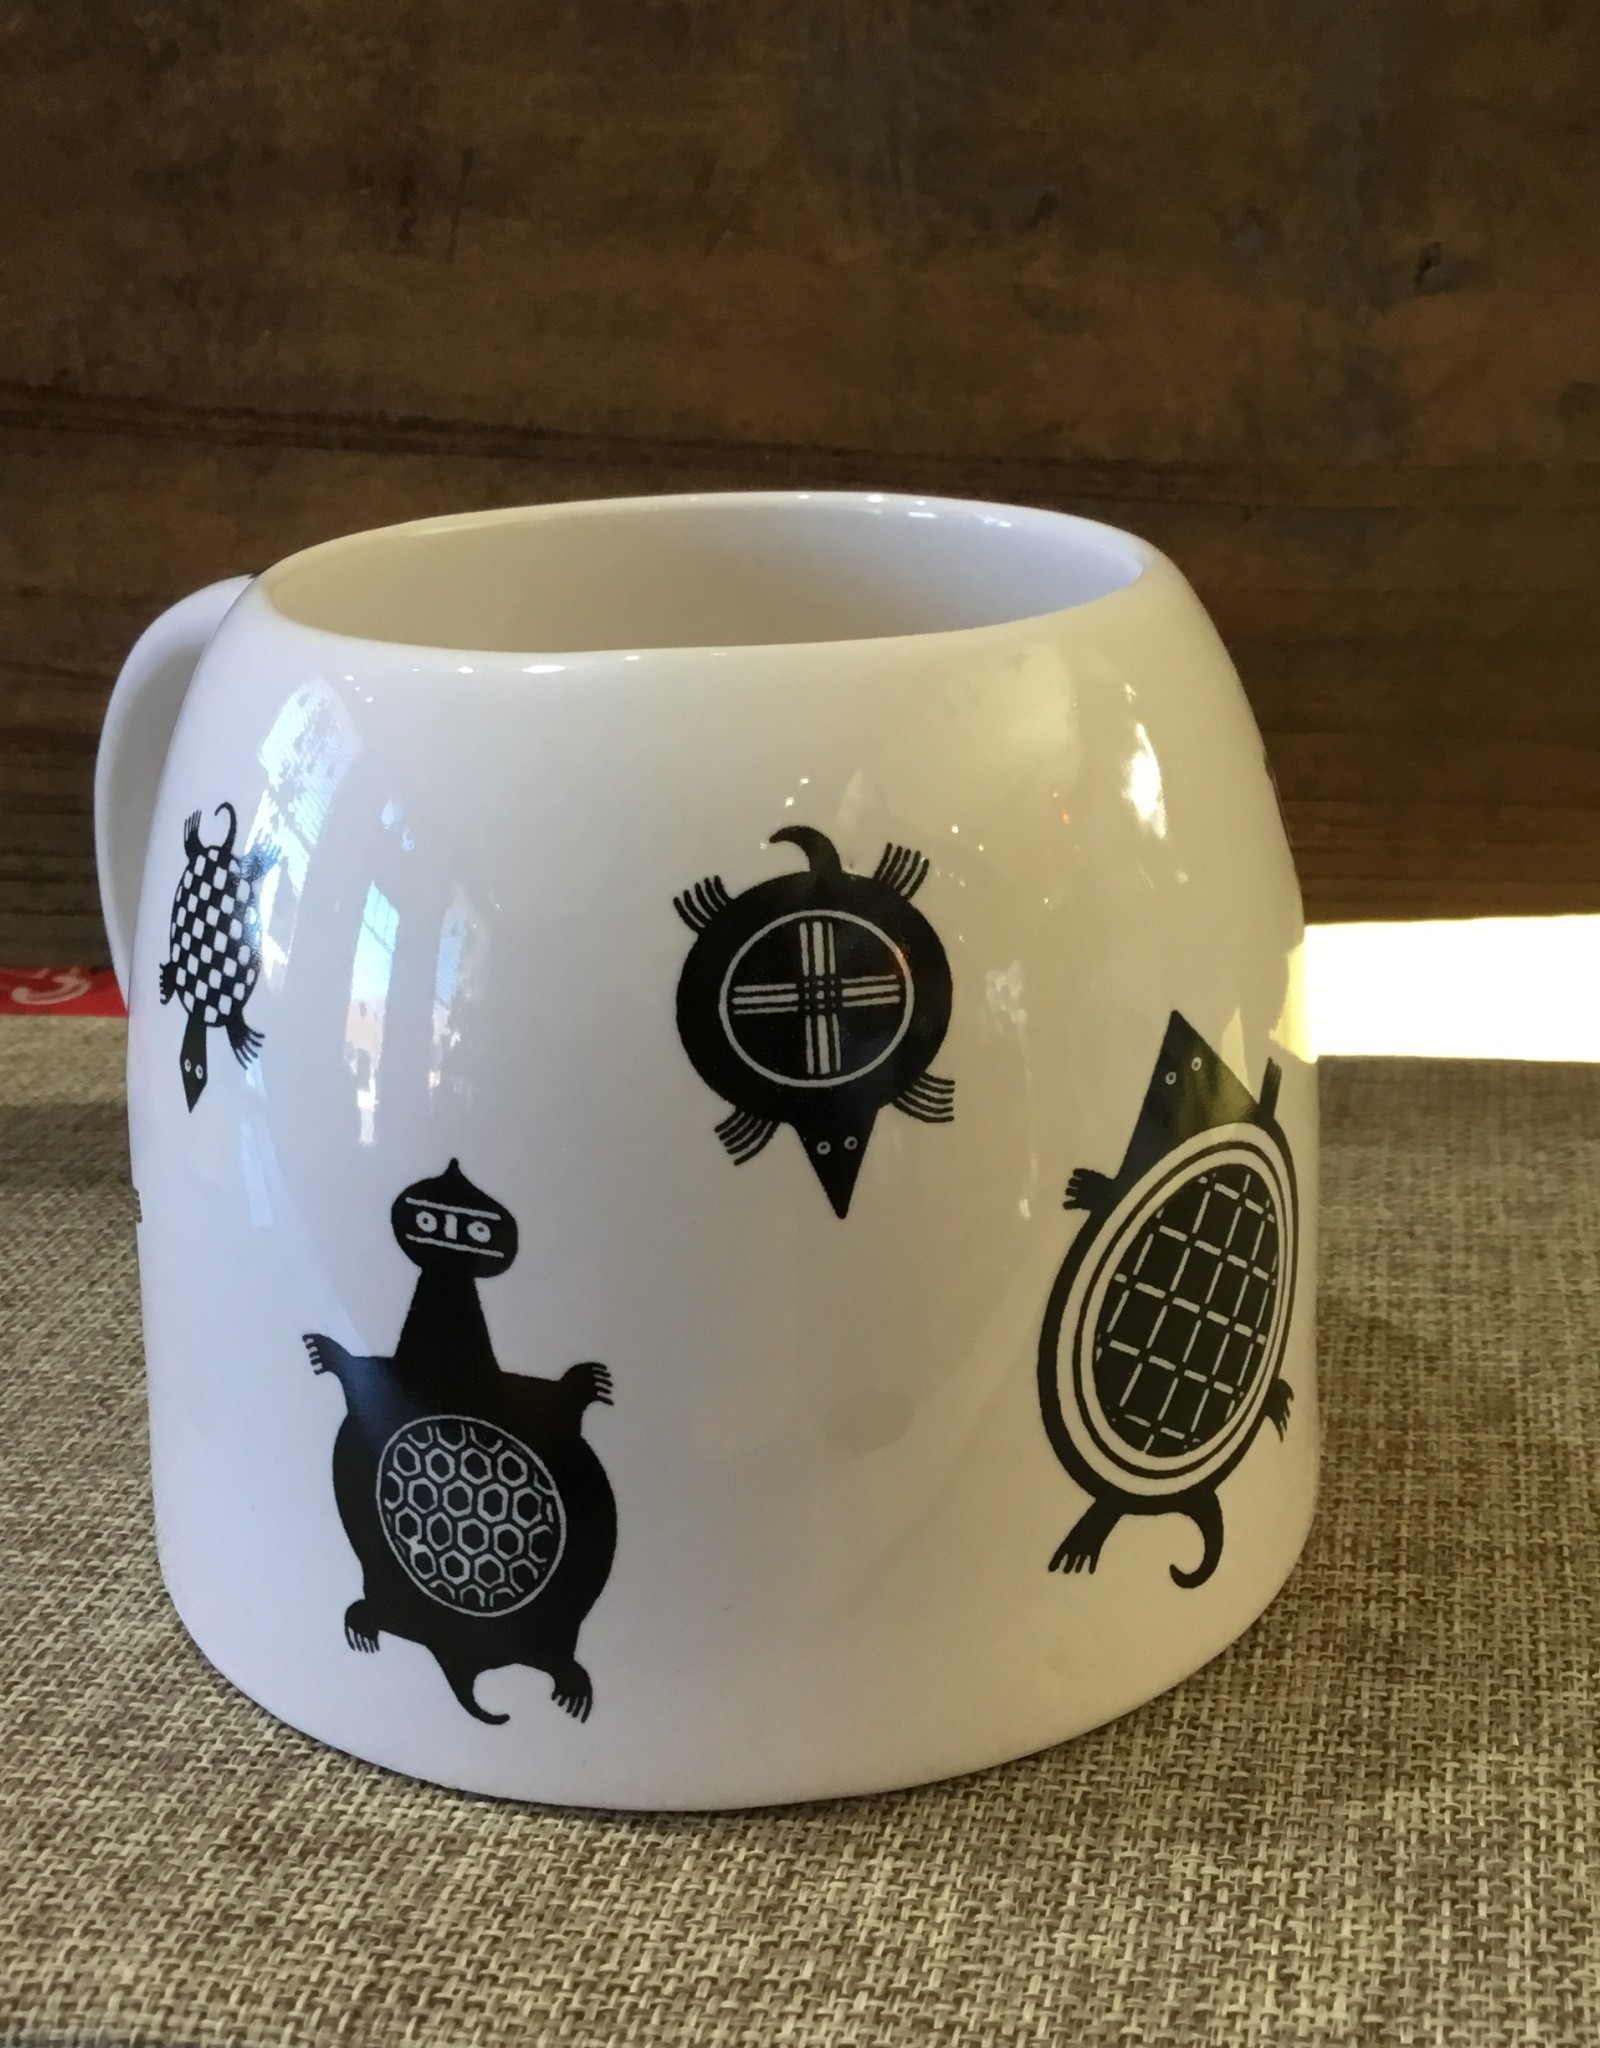 Treasure Chest Mugs Mug, Southwest Mimbres style